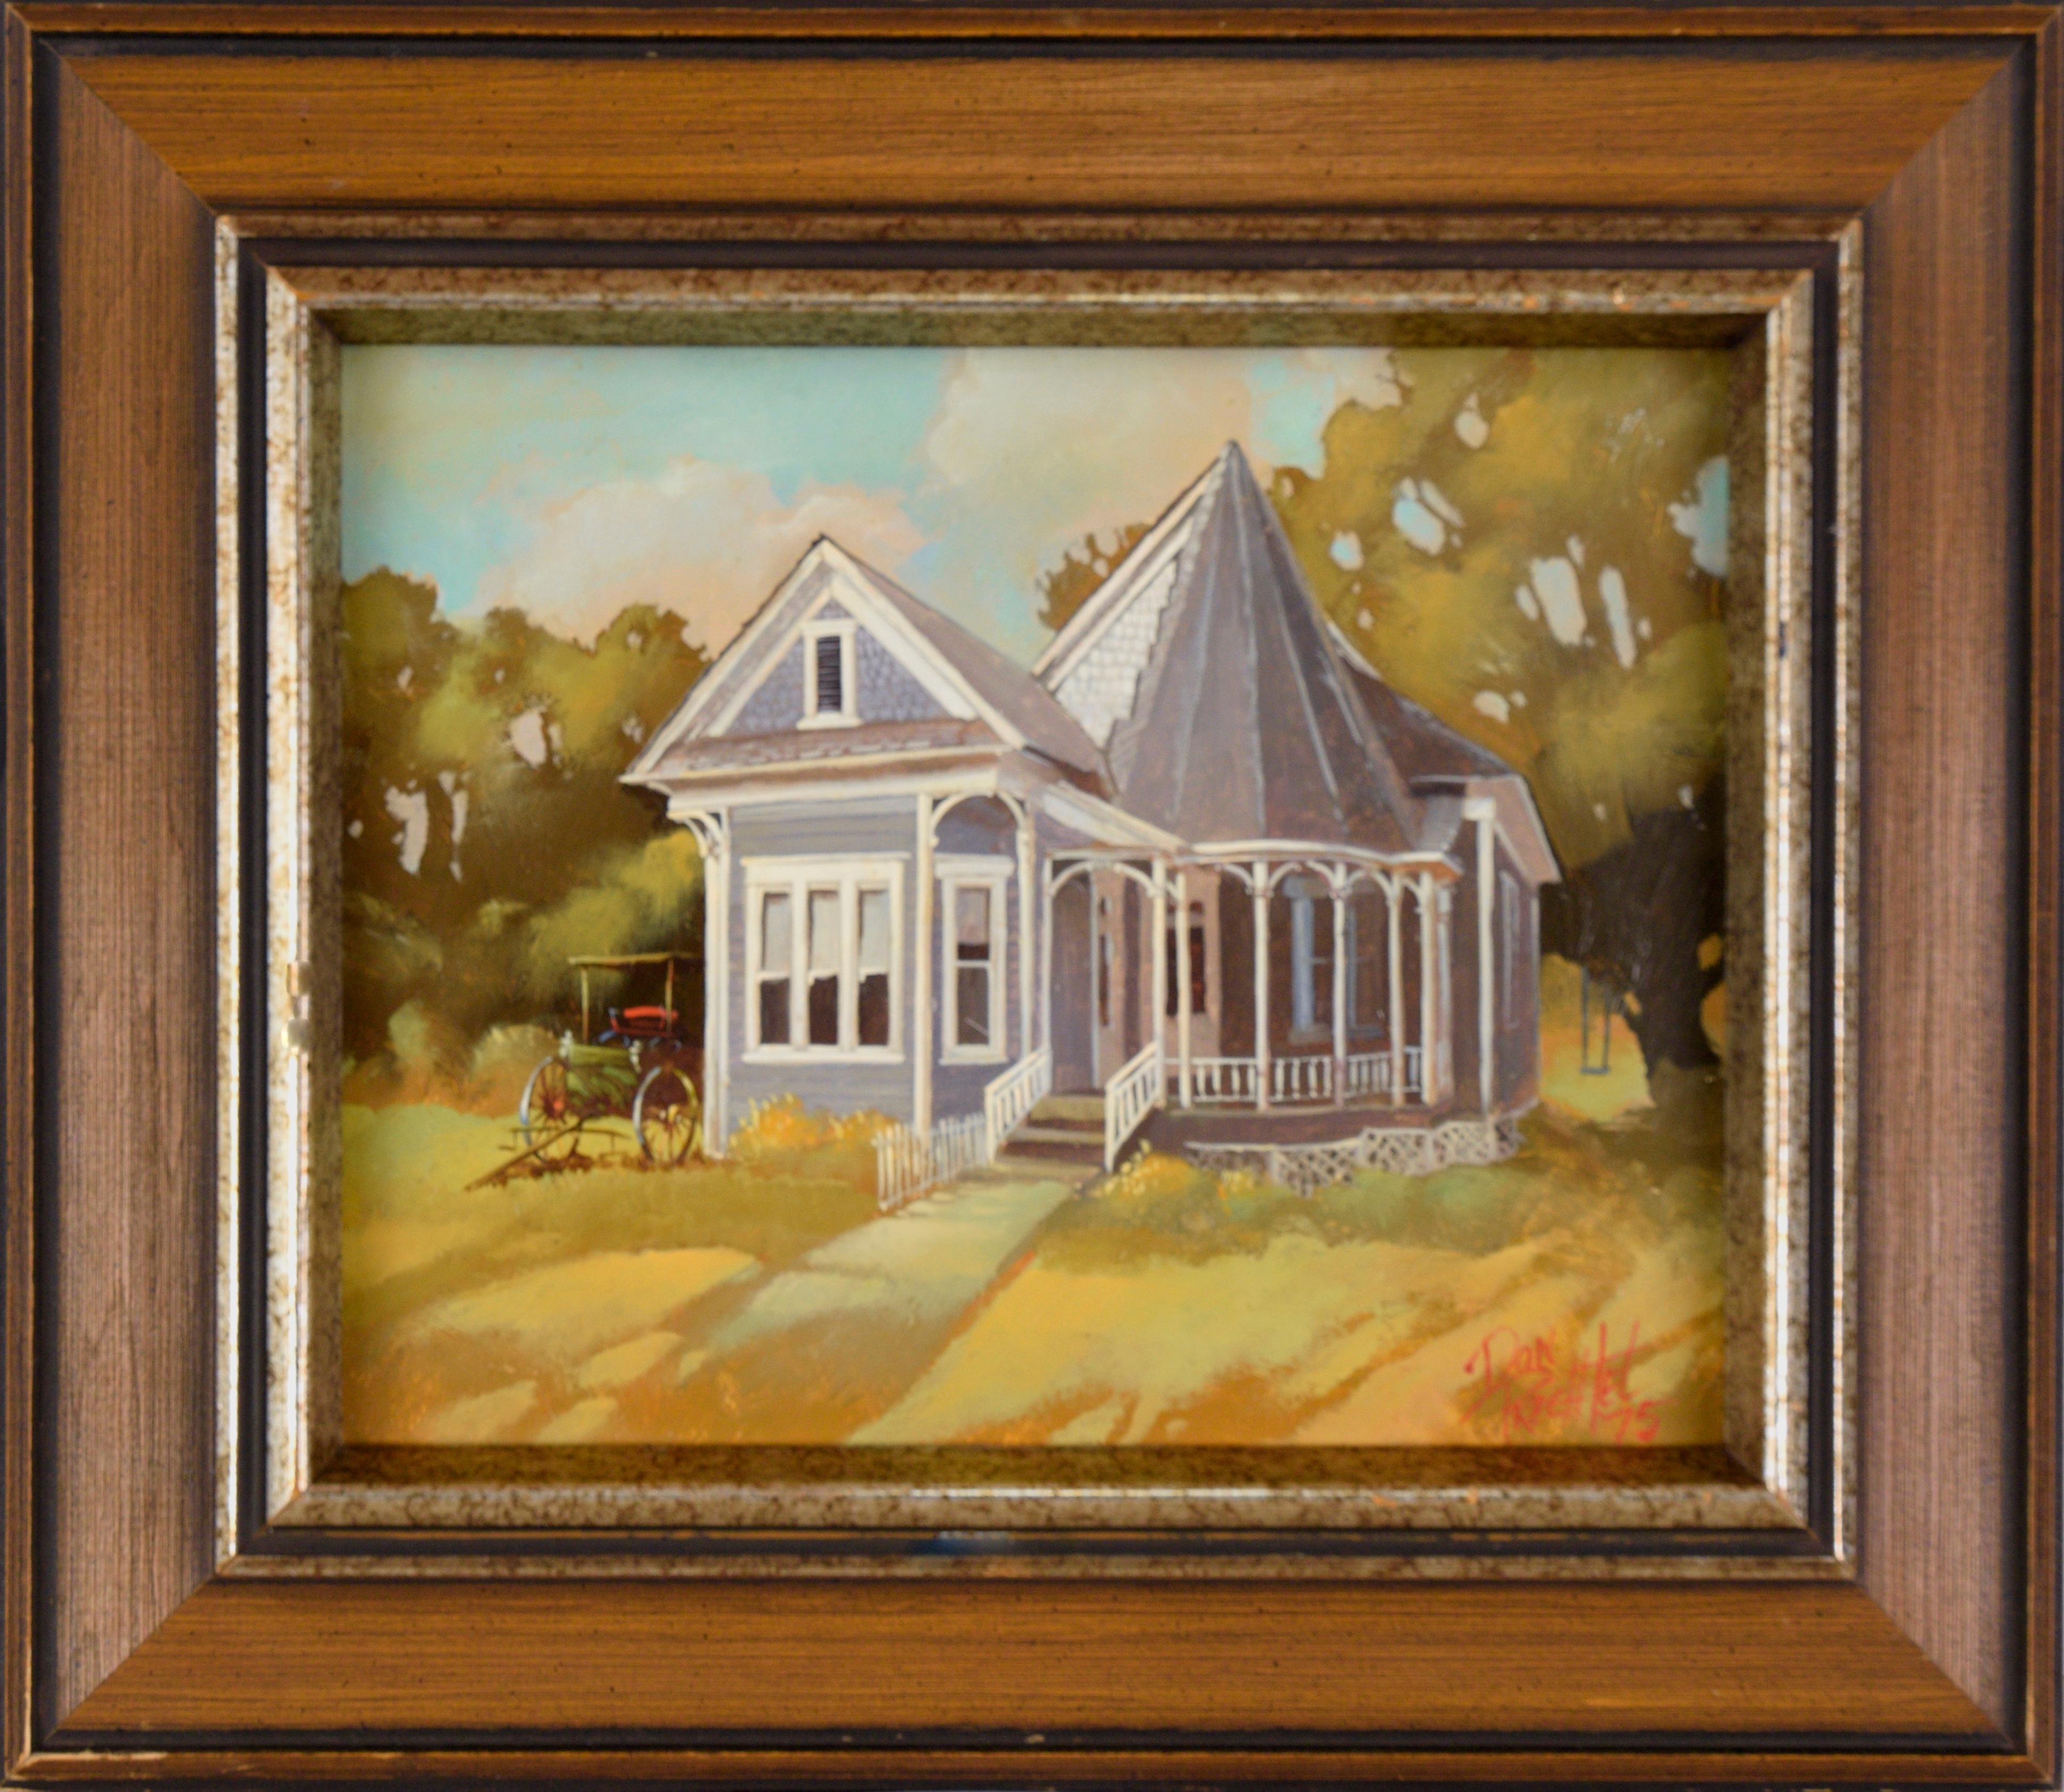 Don Prechtel Landscape Painting - "Dr. Snapp House" Oil Painting 